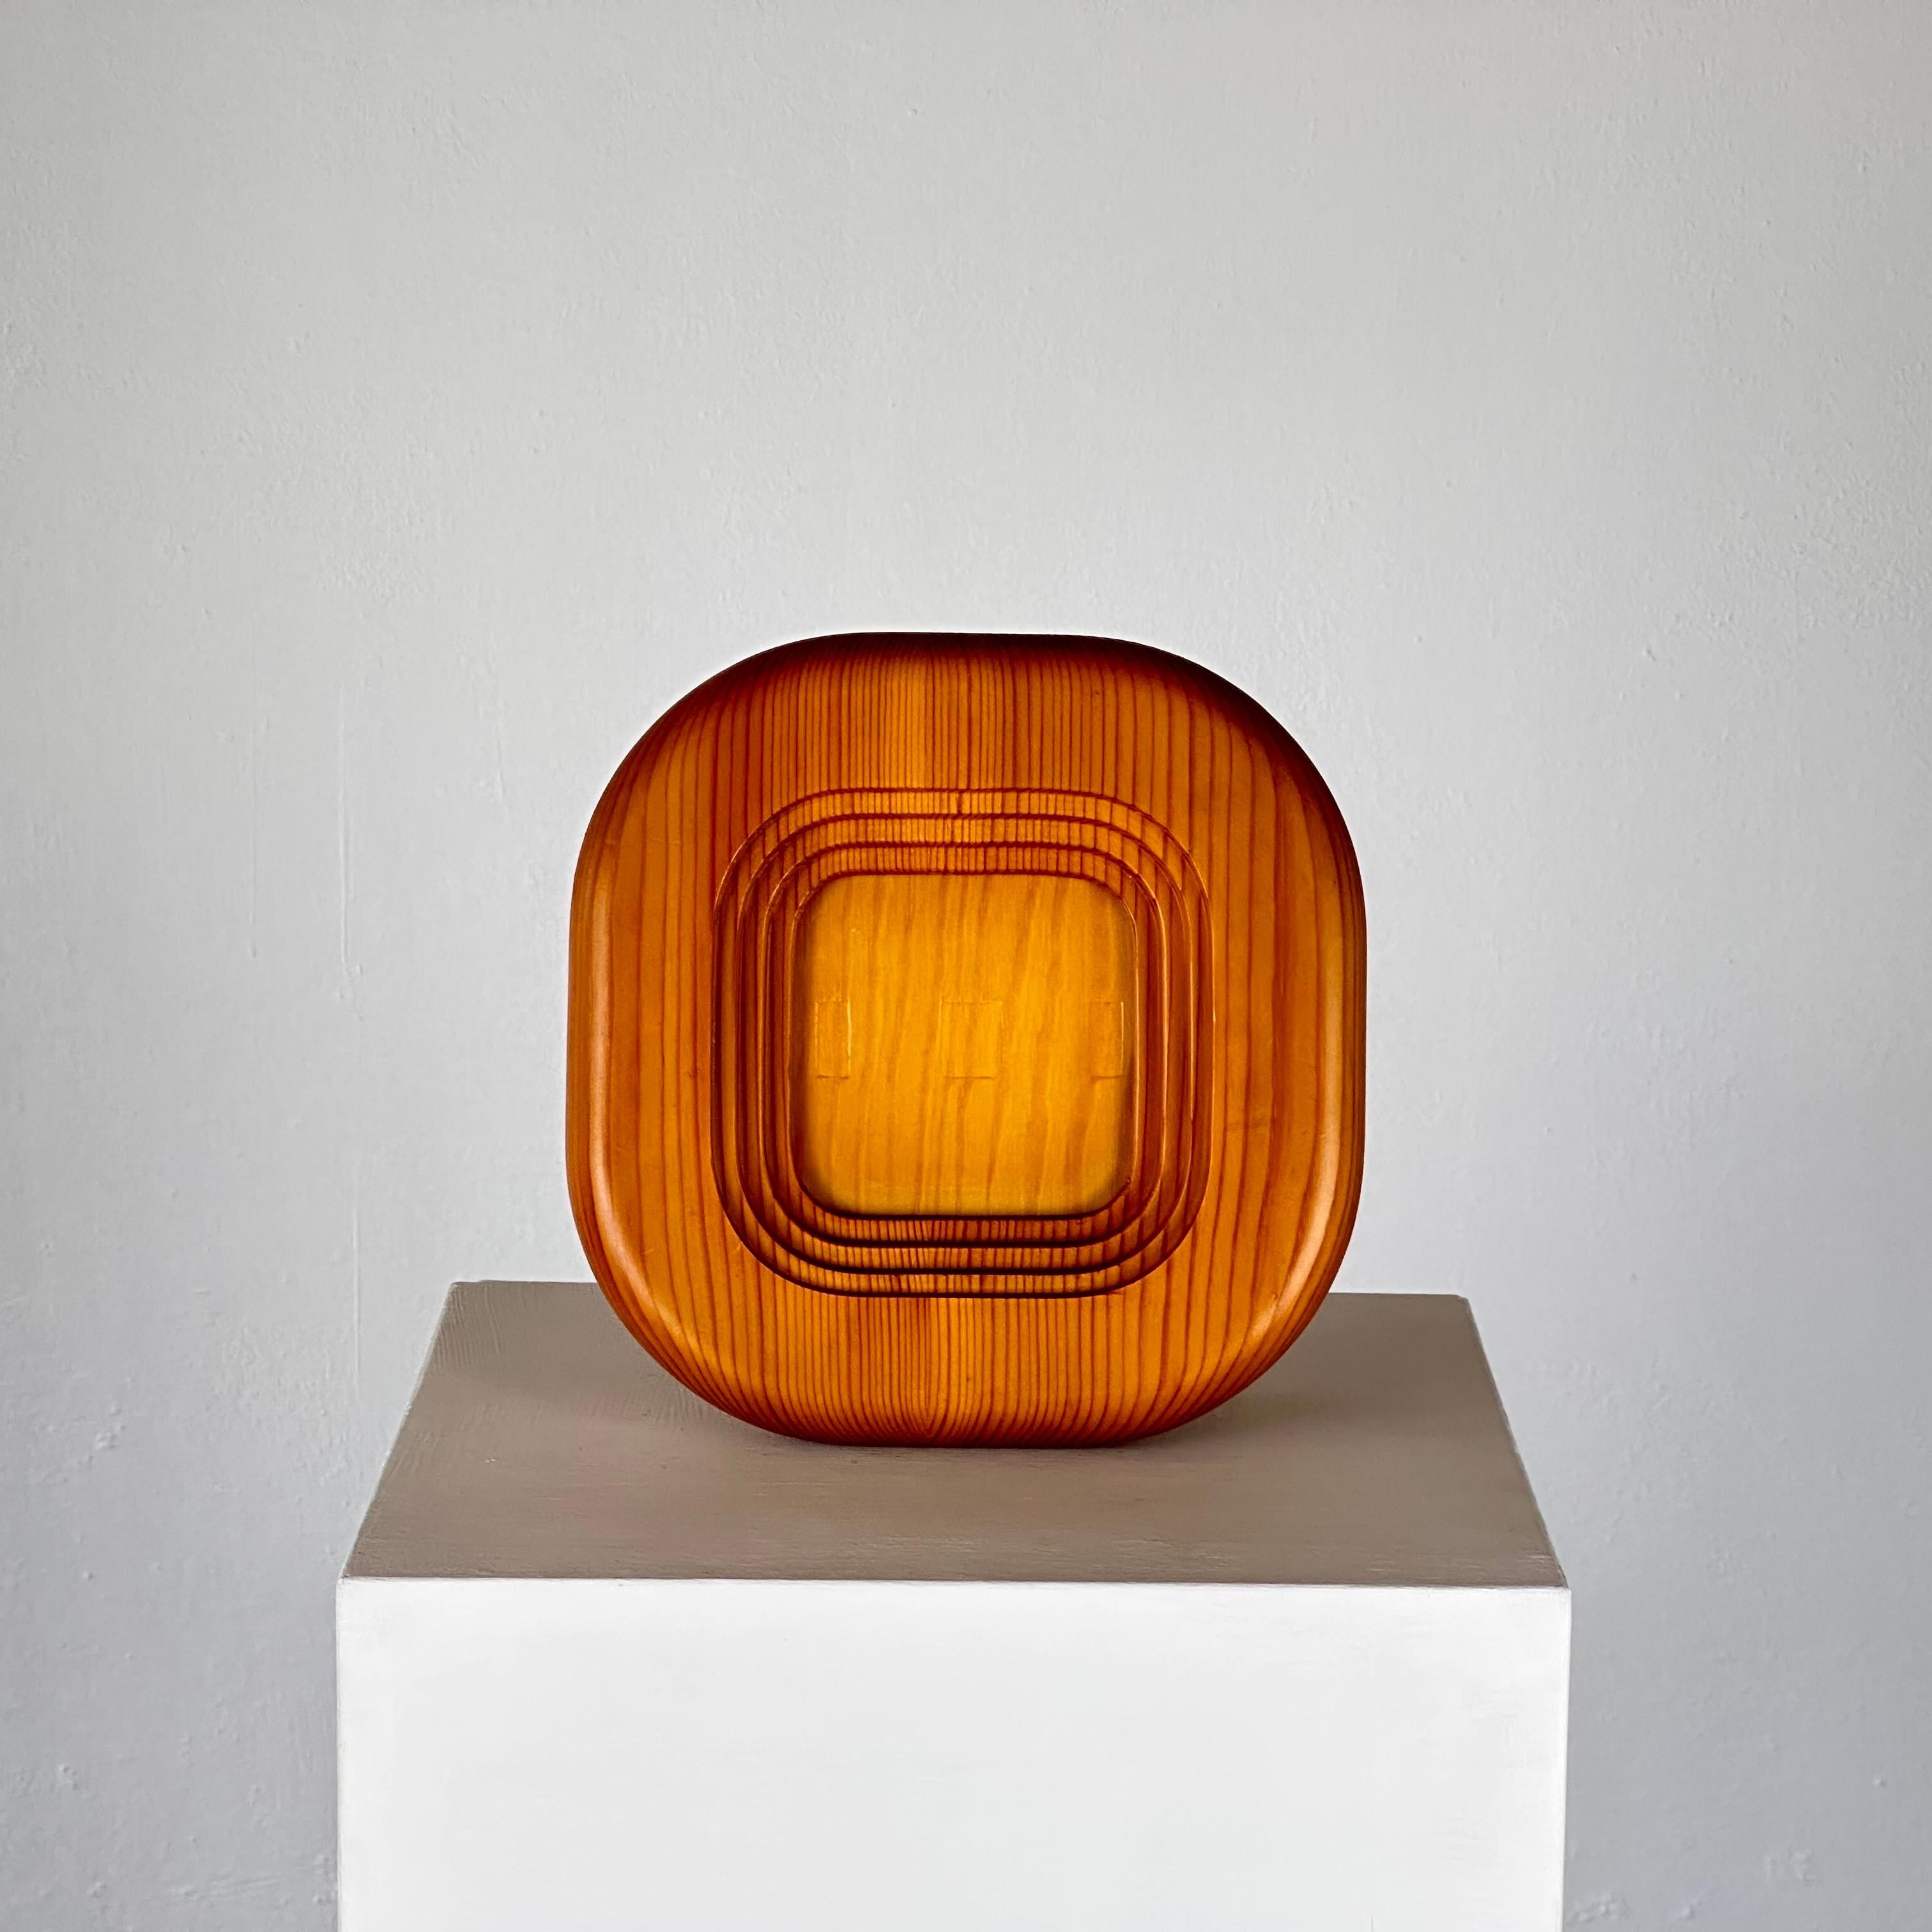 Présentant une pièce intemporelle du design du milieu du siècle, ce cadre photo vintage en bois de pin réalisé par le célèbre architecte et designer finlandais Alvar Aalto pour Artek capture l'essence de l'artisanat scandinave des années 1970.